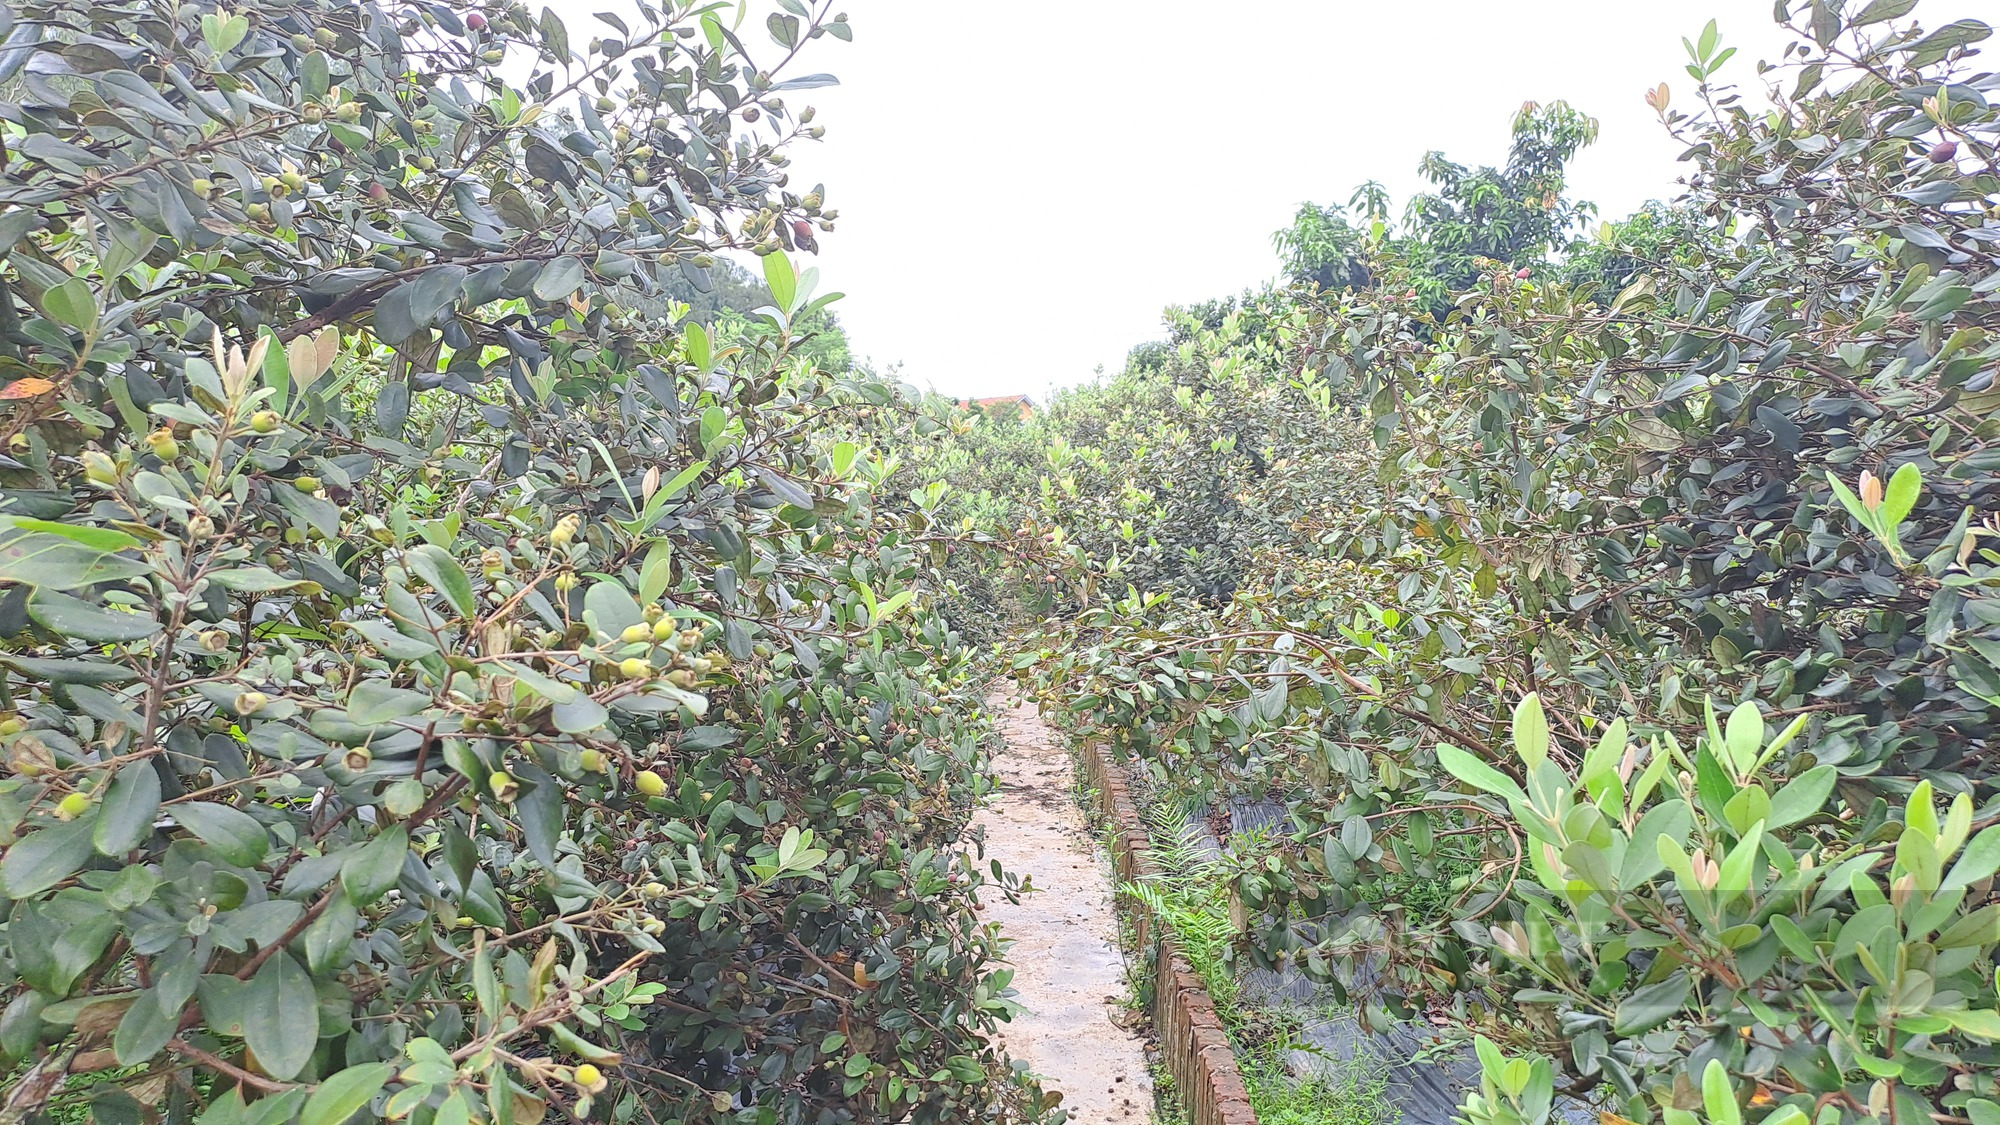 Đưa giống sim trên đất đồi cằn về trồng tại vườn nhà, cô giáo Thái Nguyên quyết bảo tồn loài cây này - Ảnh 6.